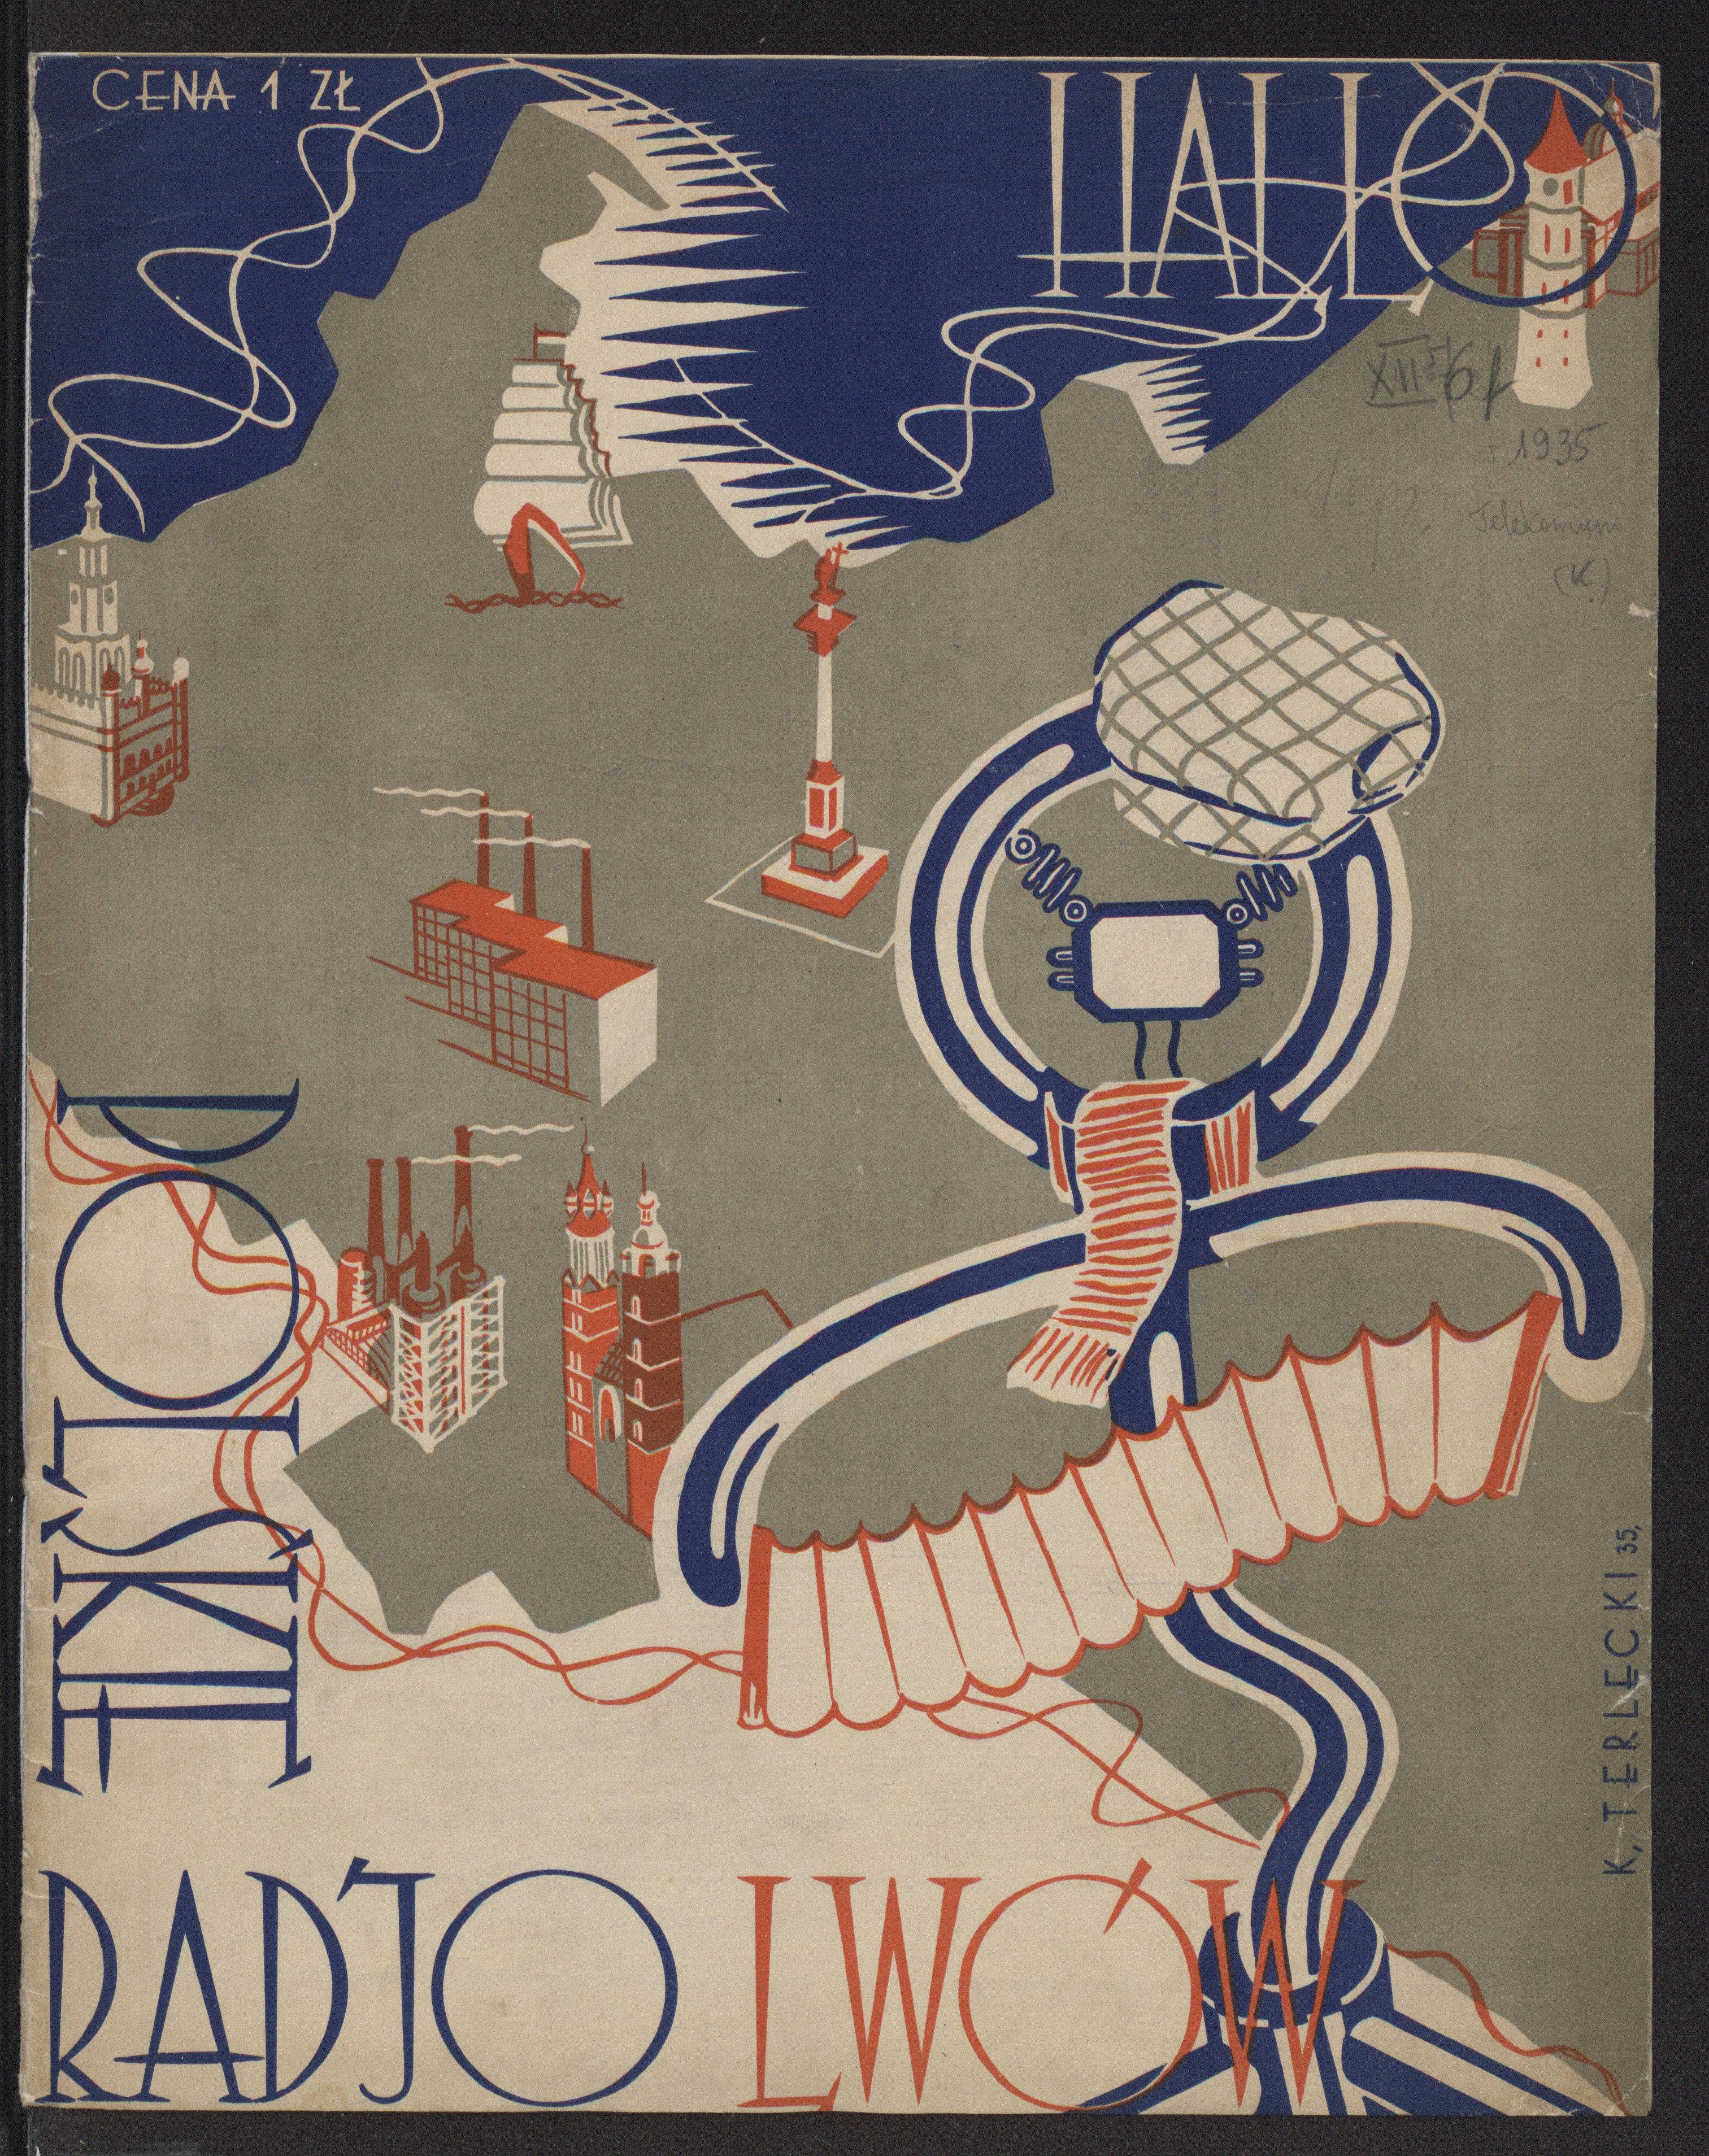 "Hallo! Polskie Radjo - Lwów!" Okładka jednodniówki Rozgłośni Lwowskiej PR, 1935 r. Fot. Polona/dp